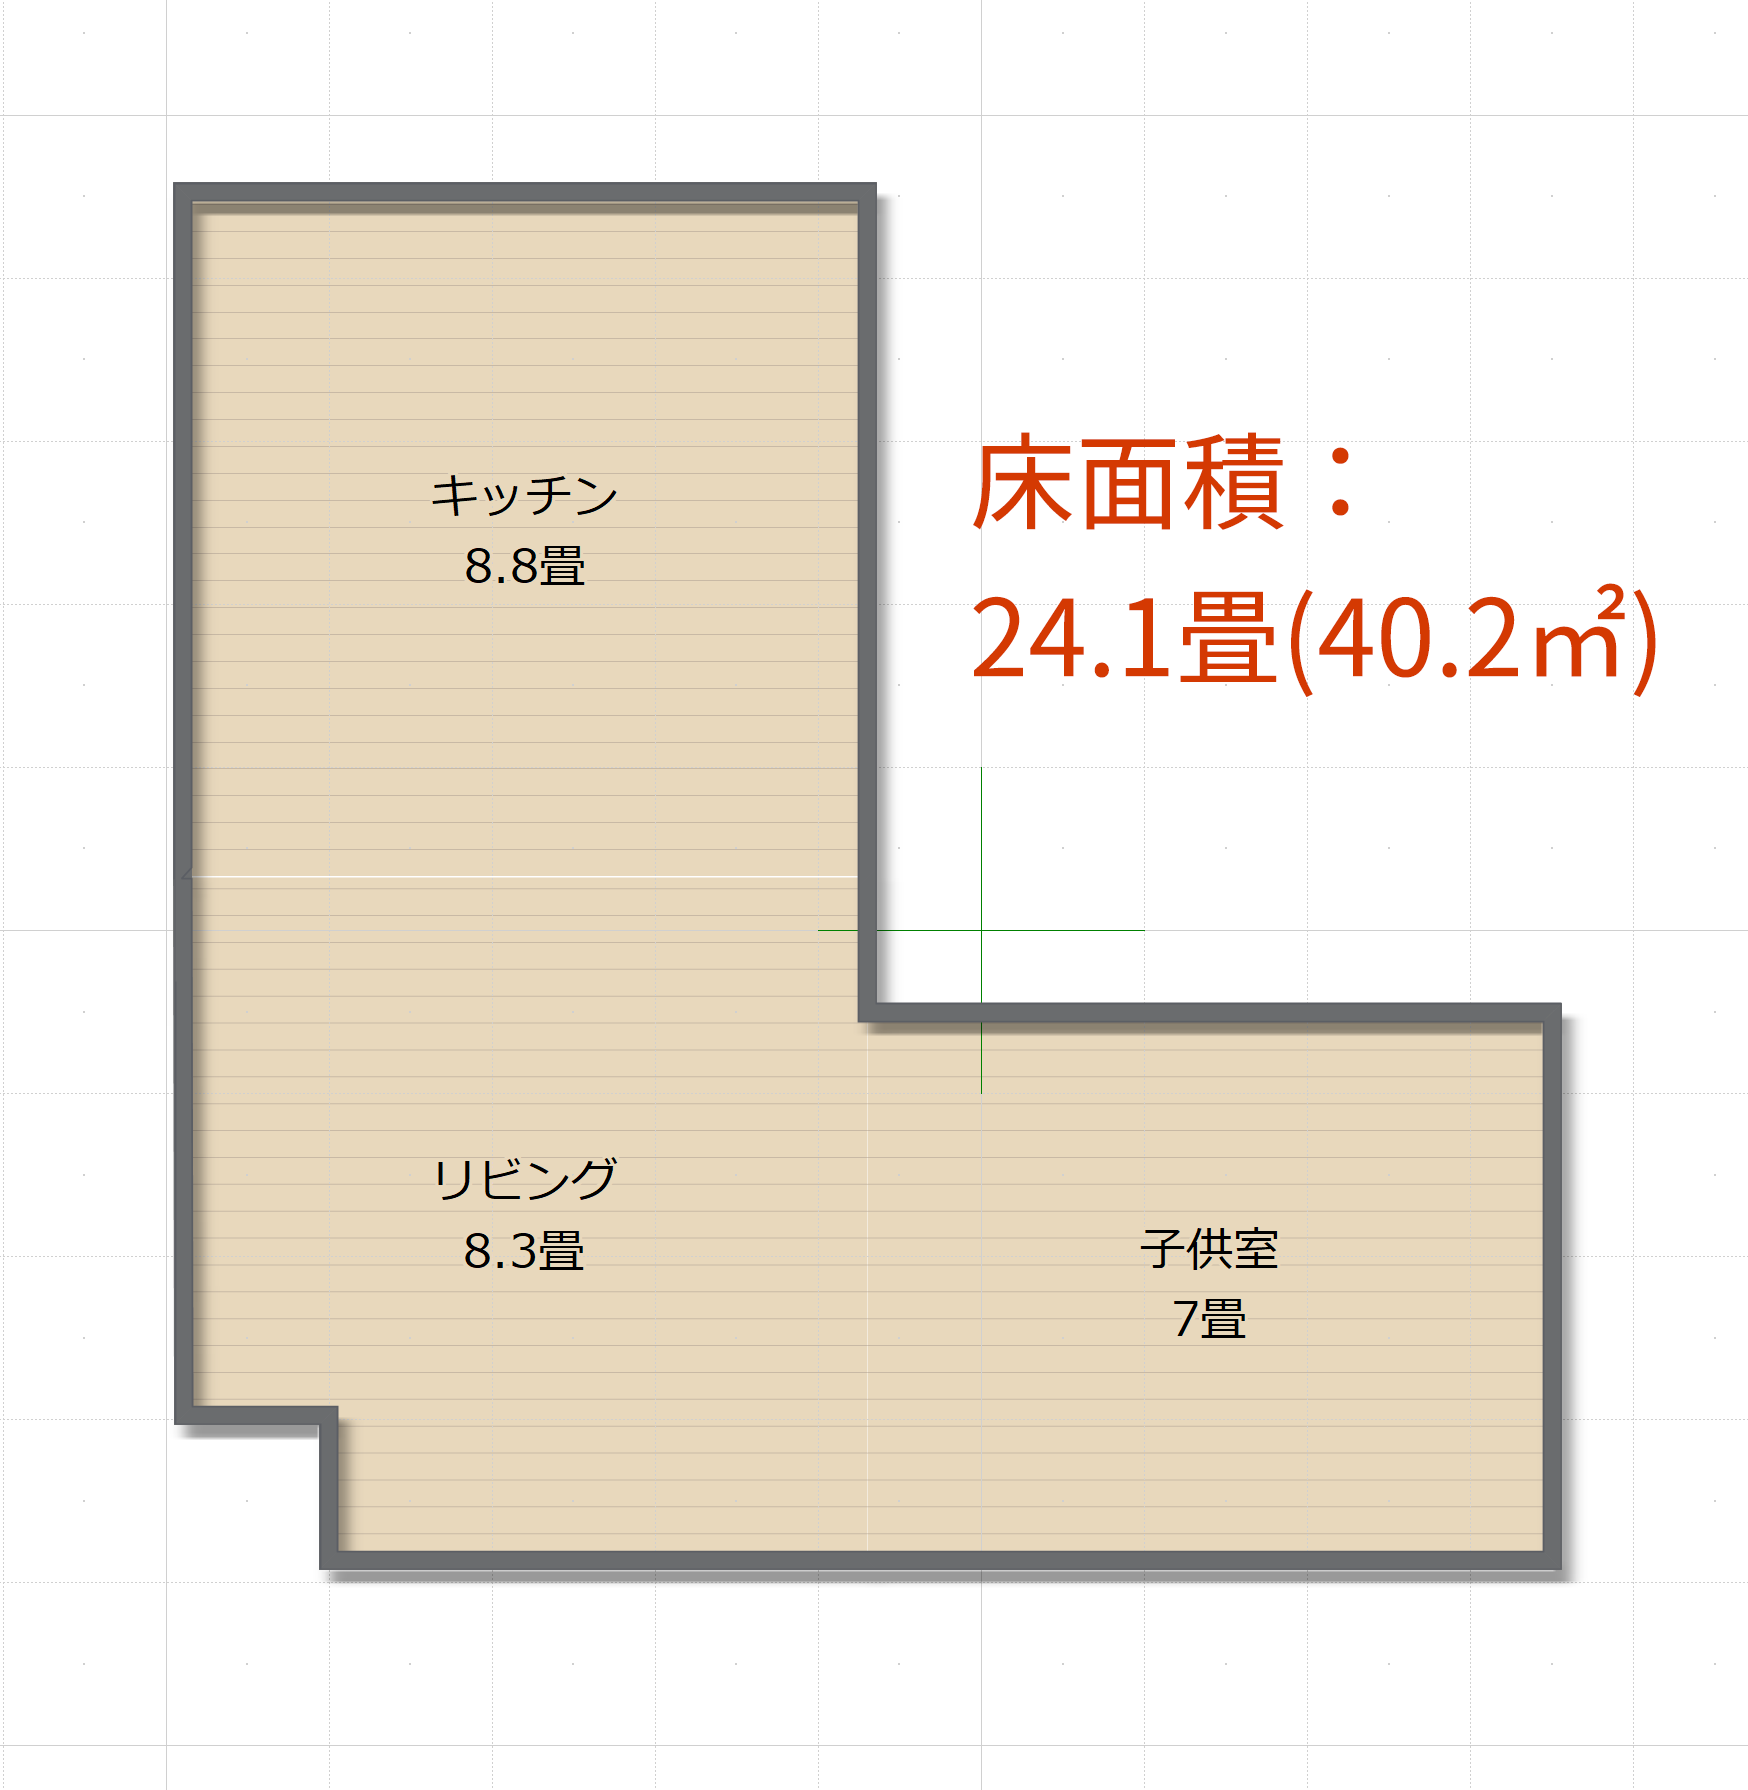 居間の床面積